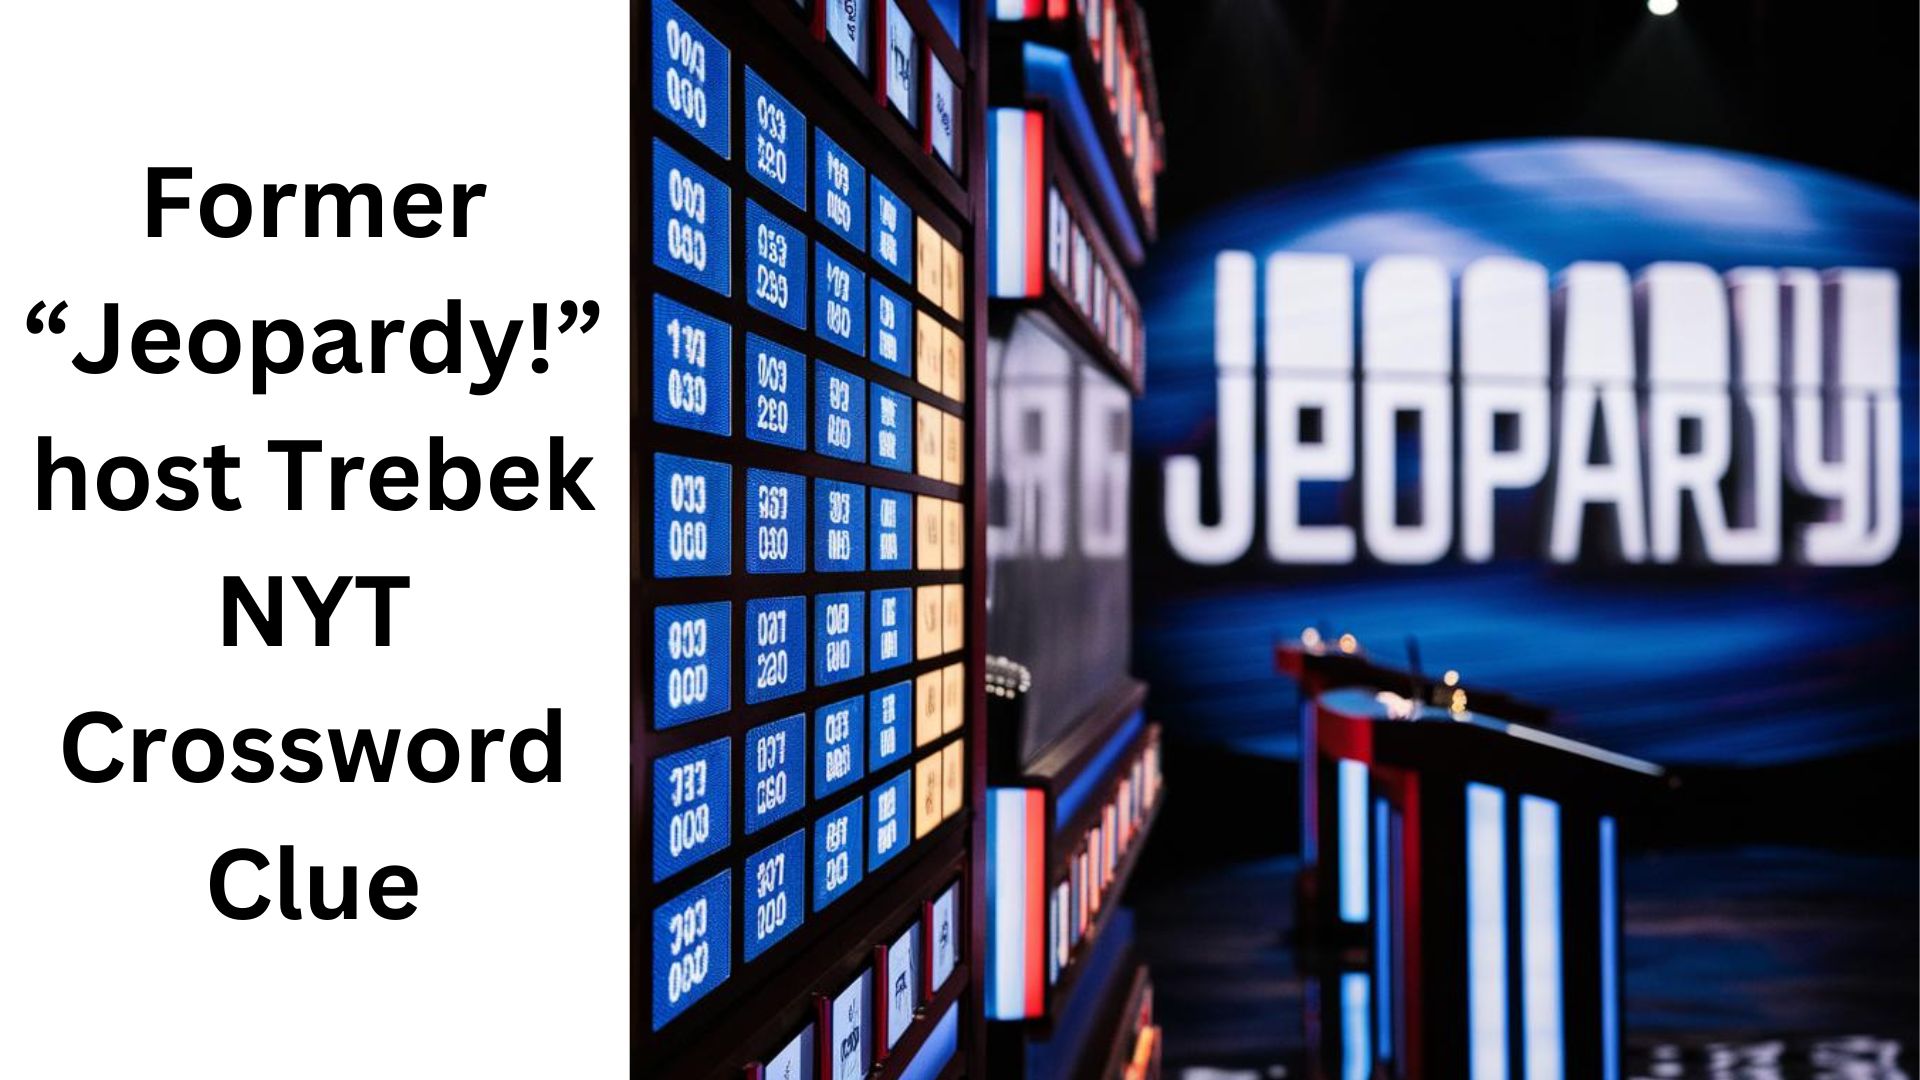 Former "Jeopardy!" host Trebek NYT Crossword Clue